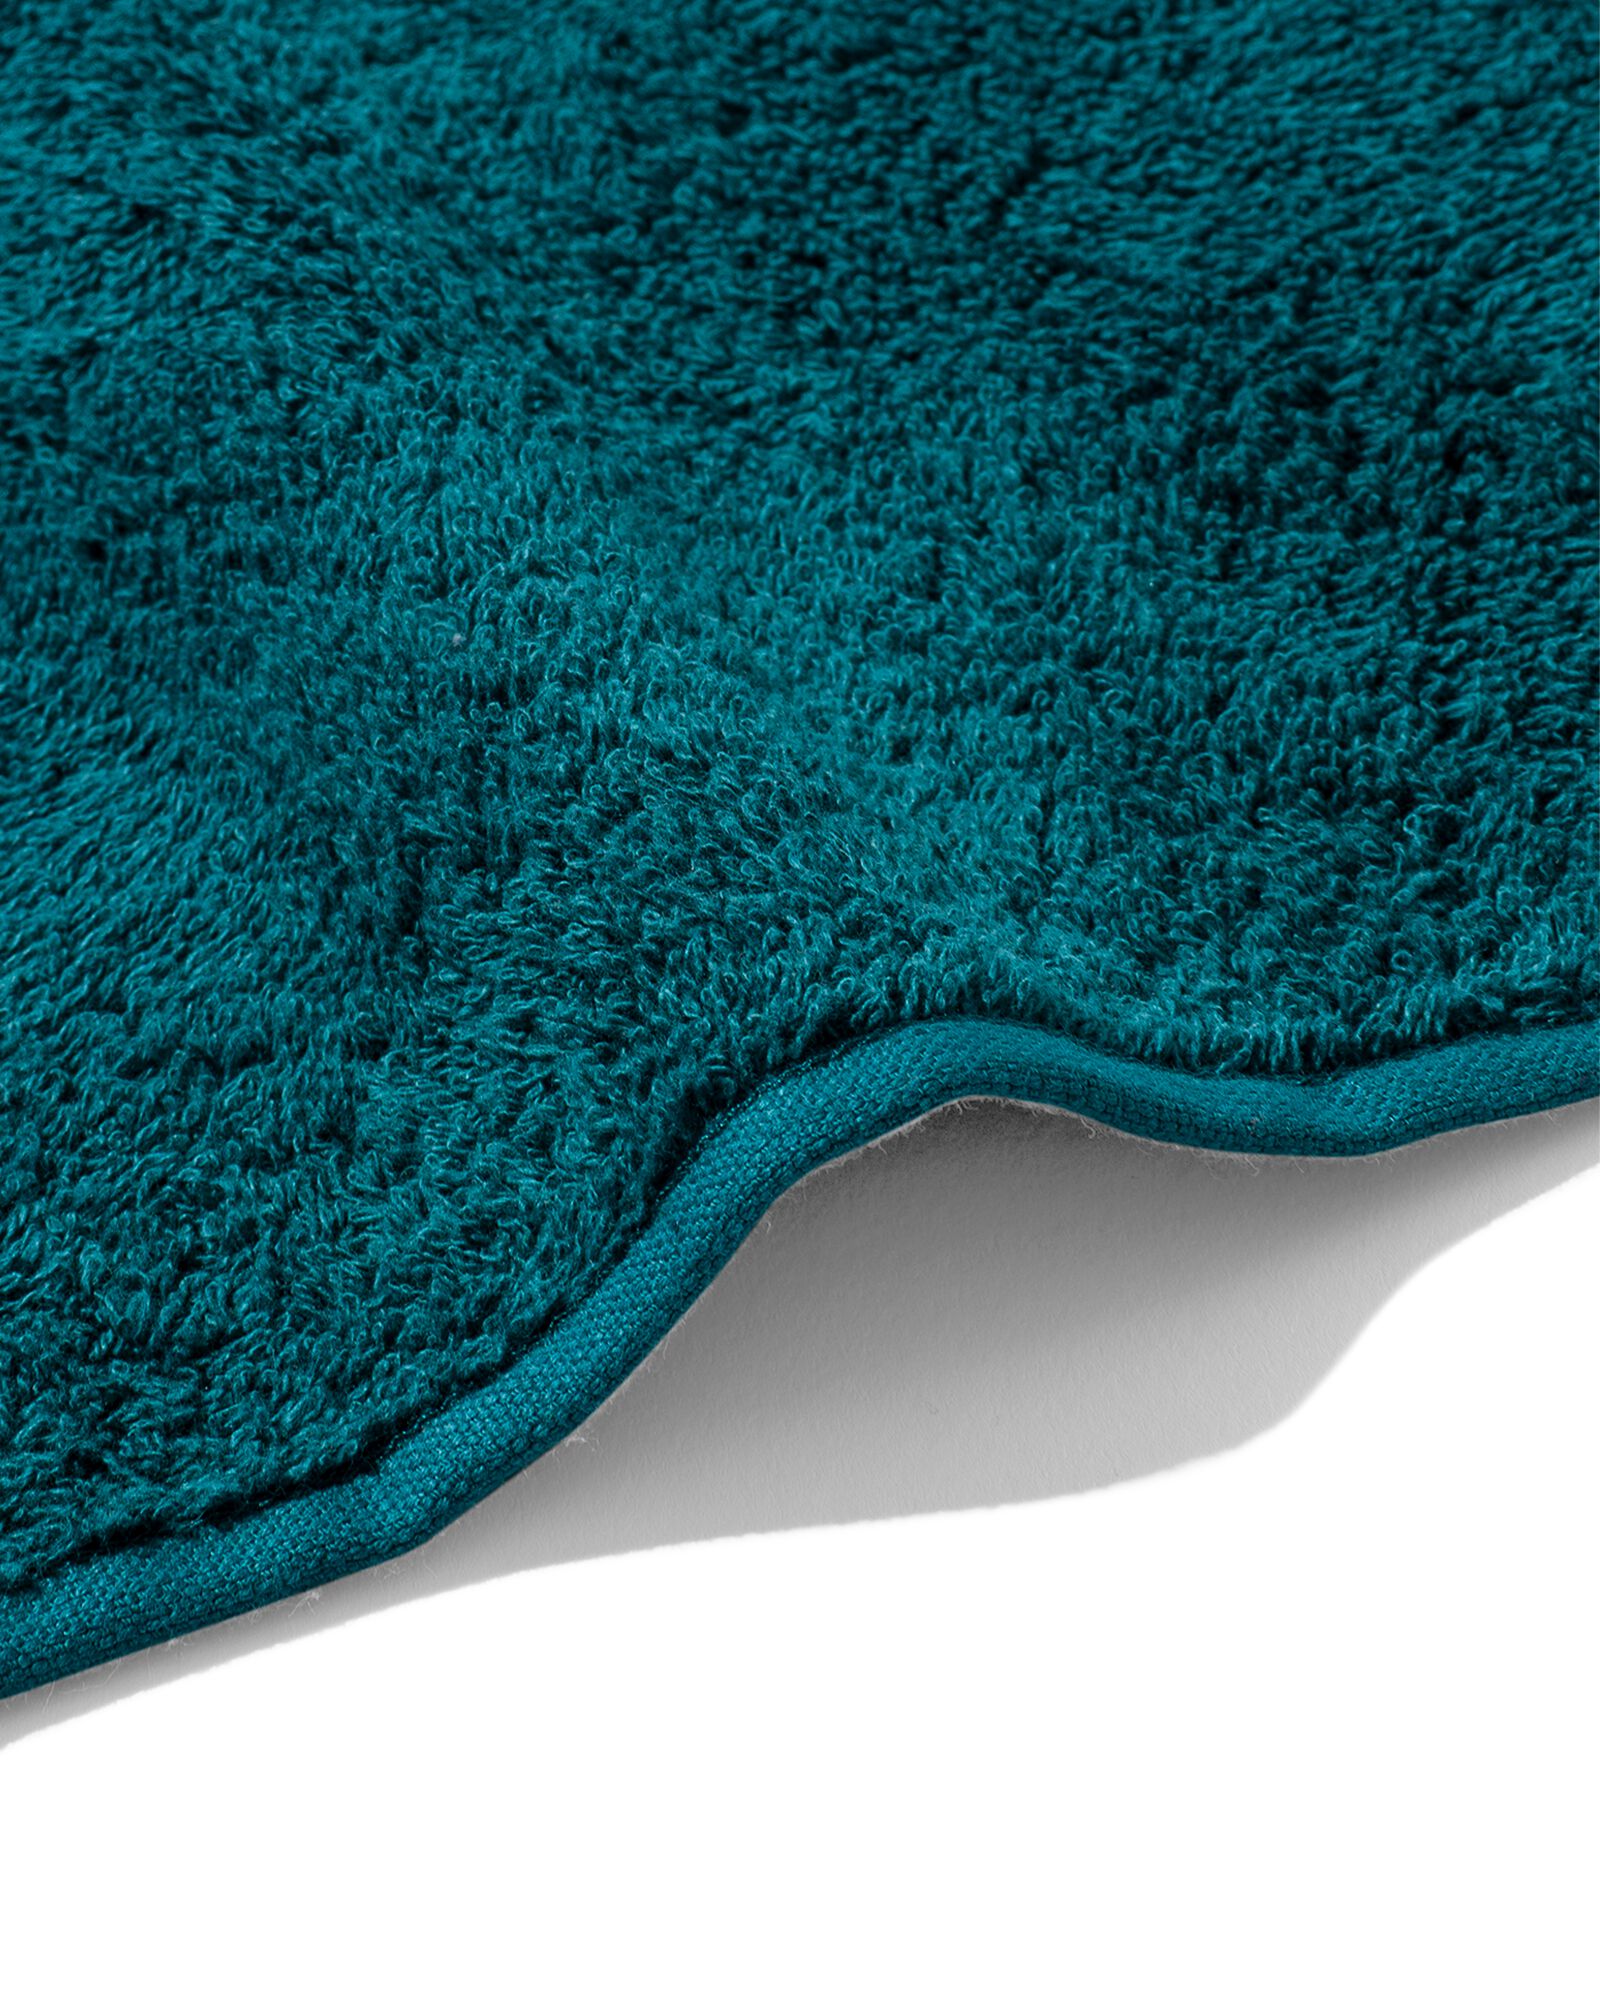 handdoek - 50 x 100 cm - zware kwaliteit - donkergroen donkergroen handdoek 50 x 100 - 5220013 - HEMA